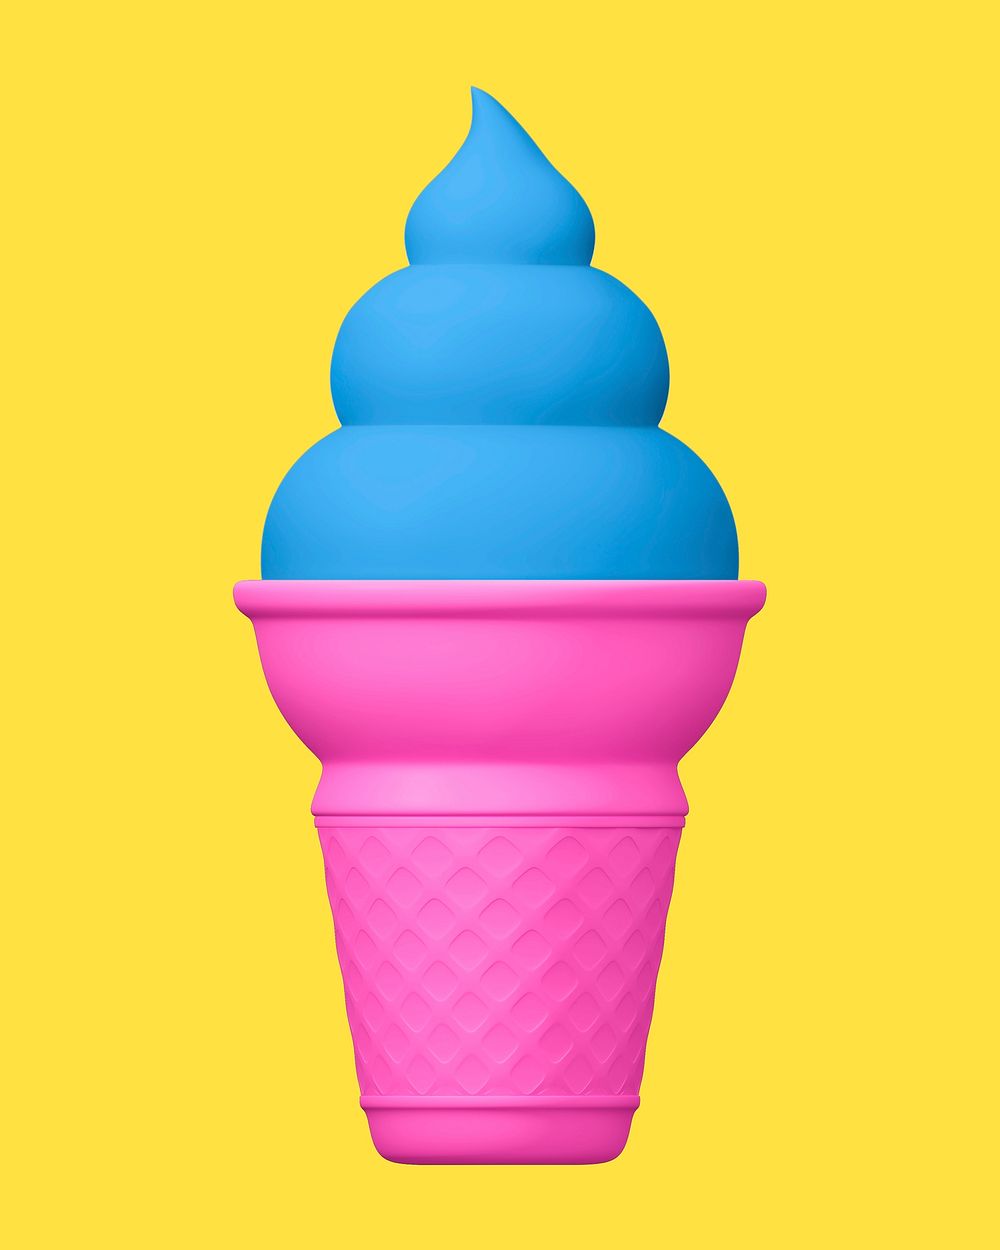 Ice-cream cone, 3D dessert illustration